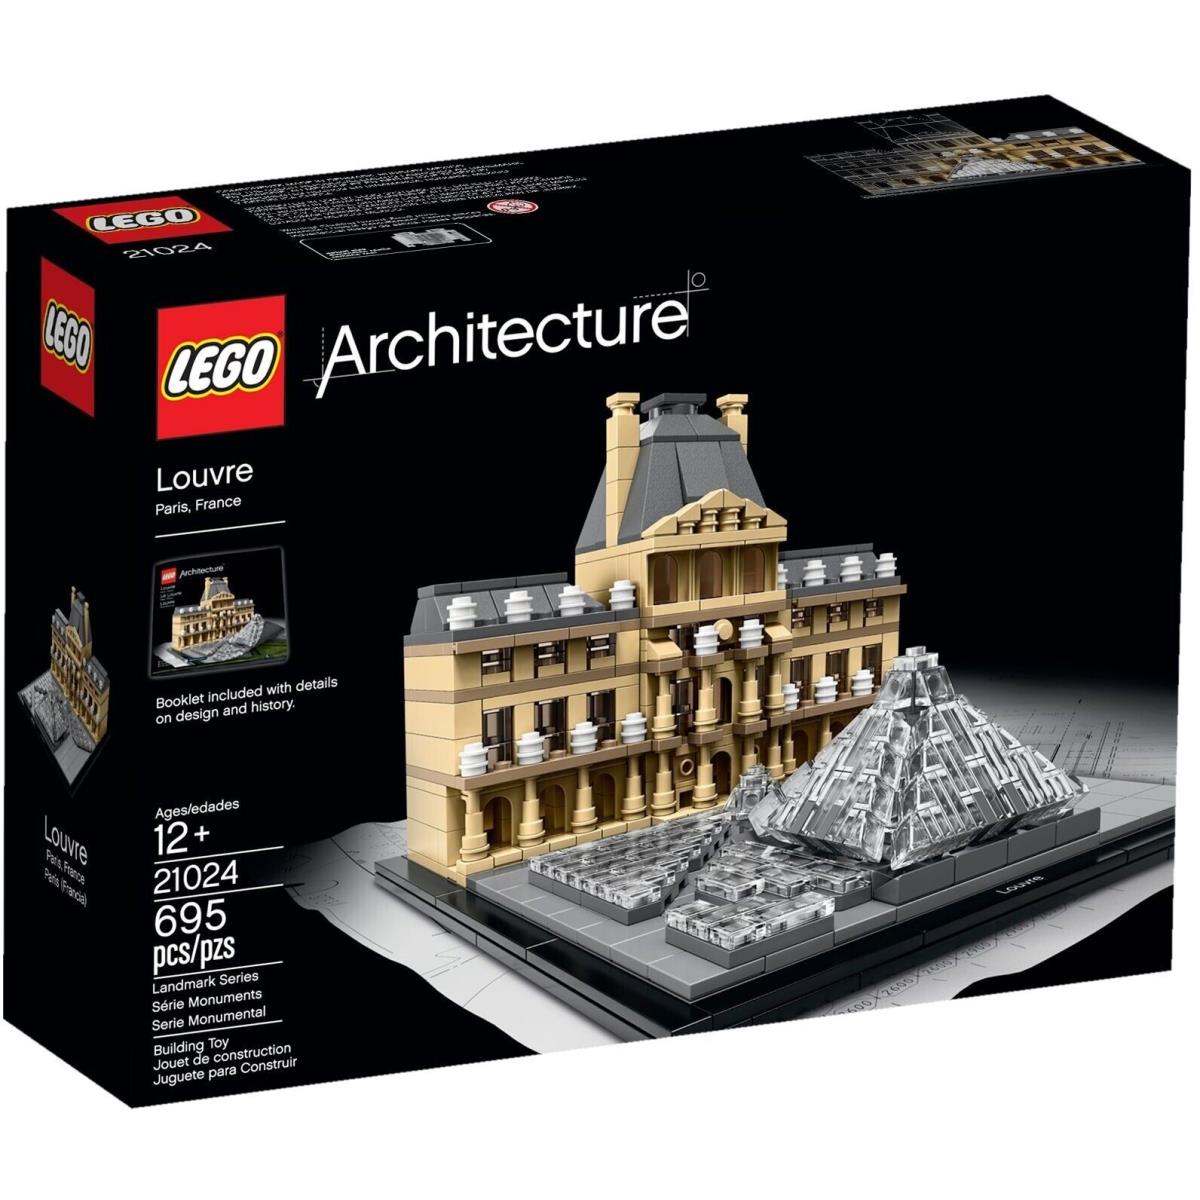 Lego Architecture Louvre 21024 Building - Paris France - Retired